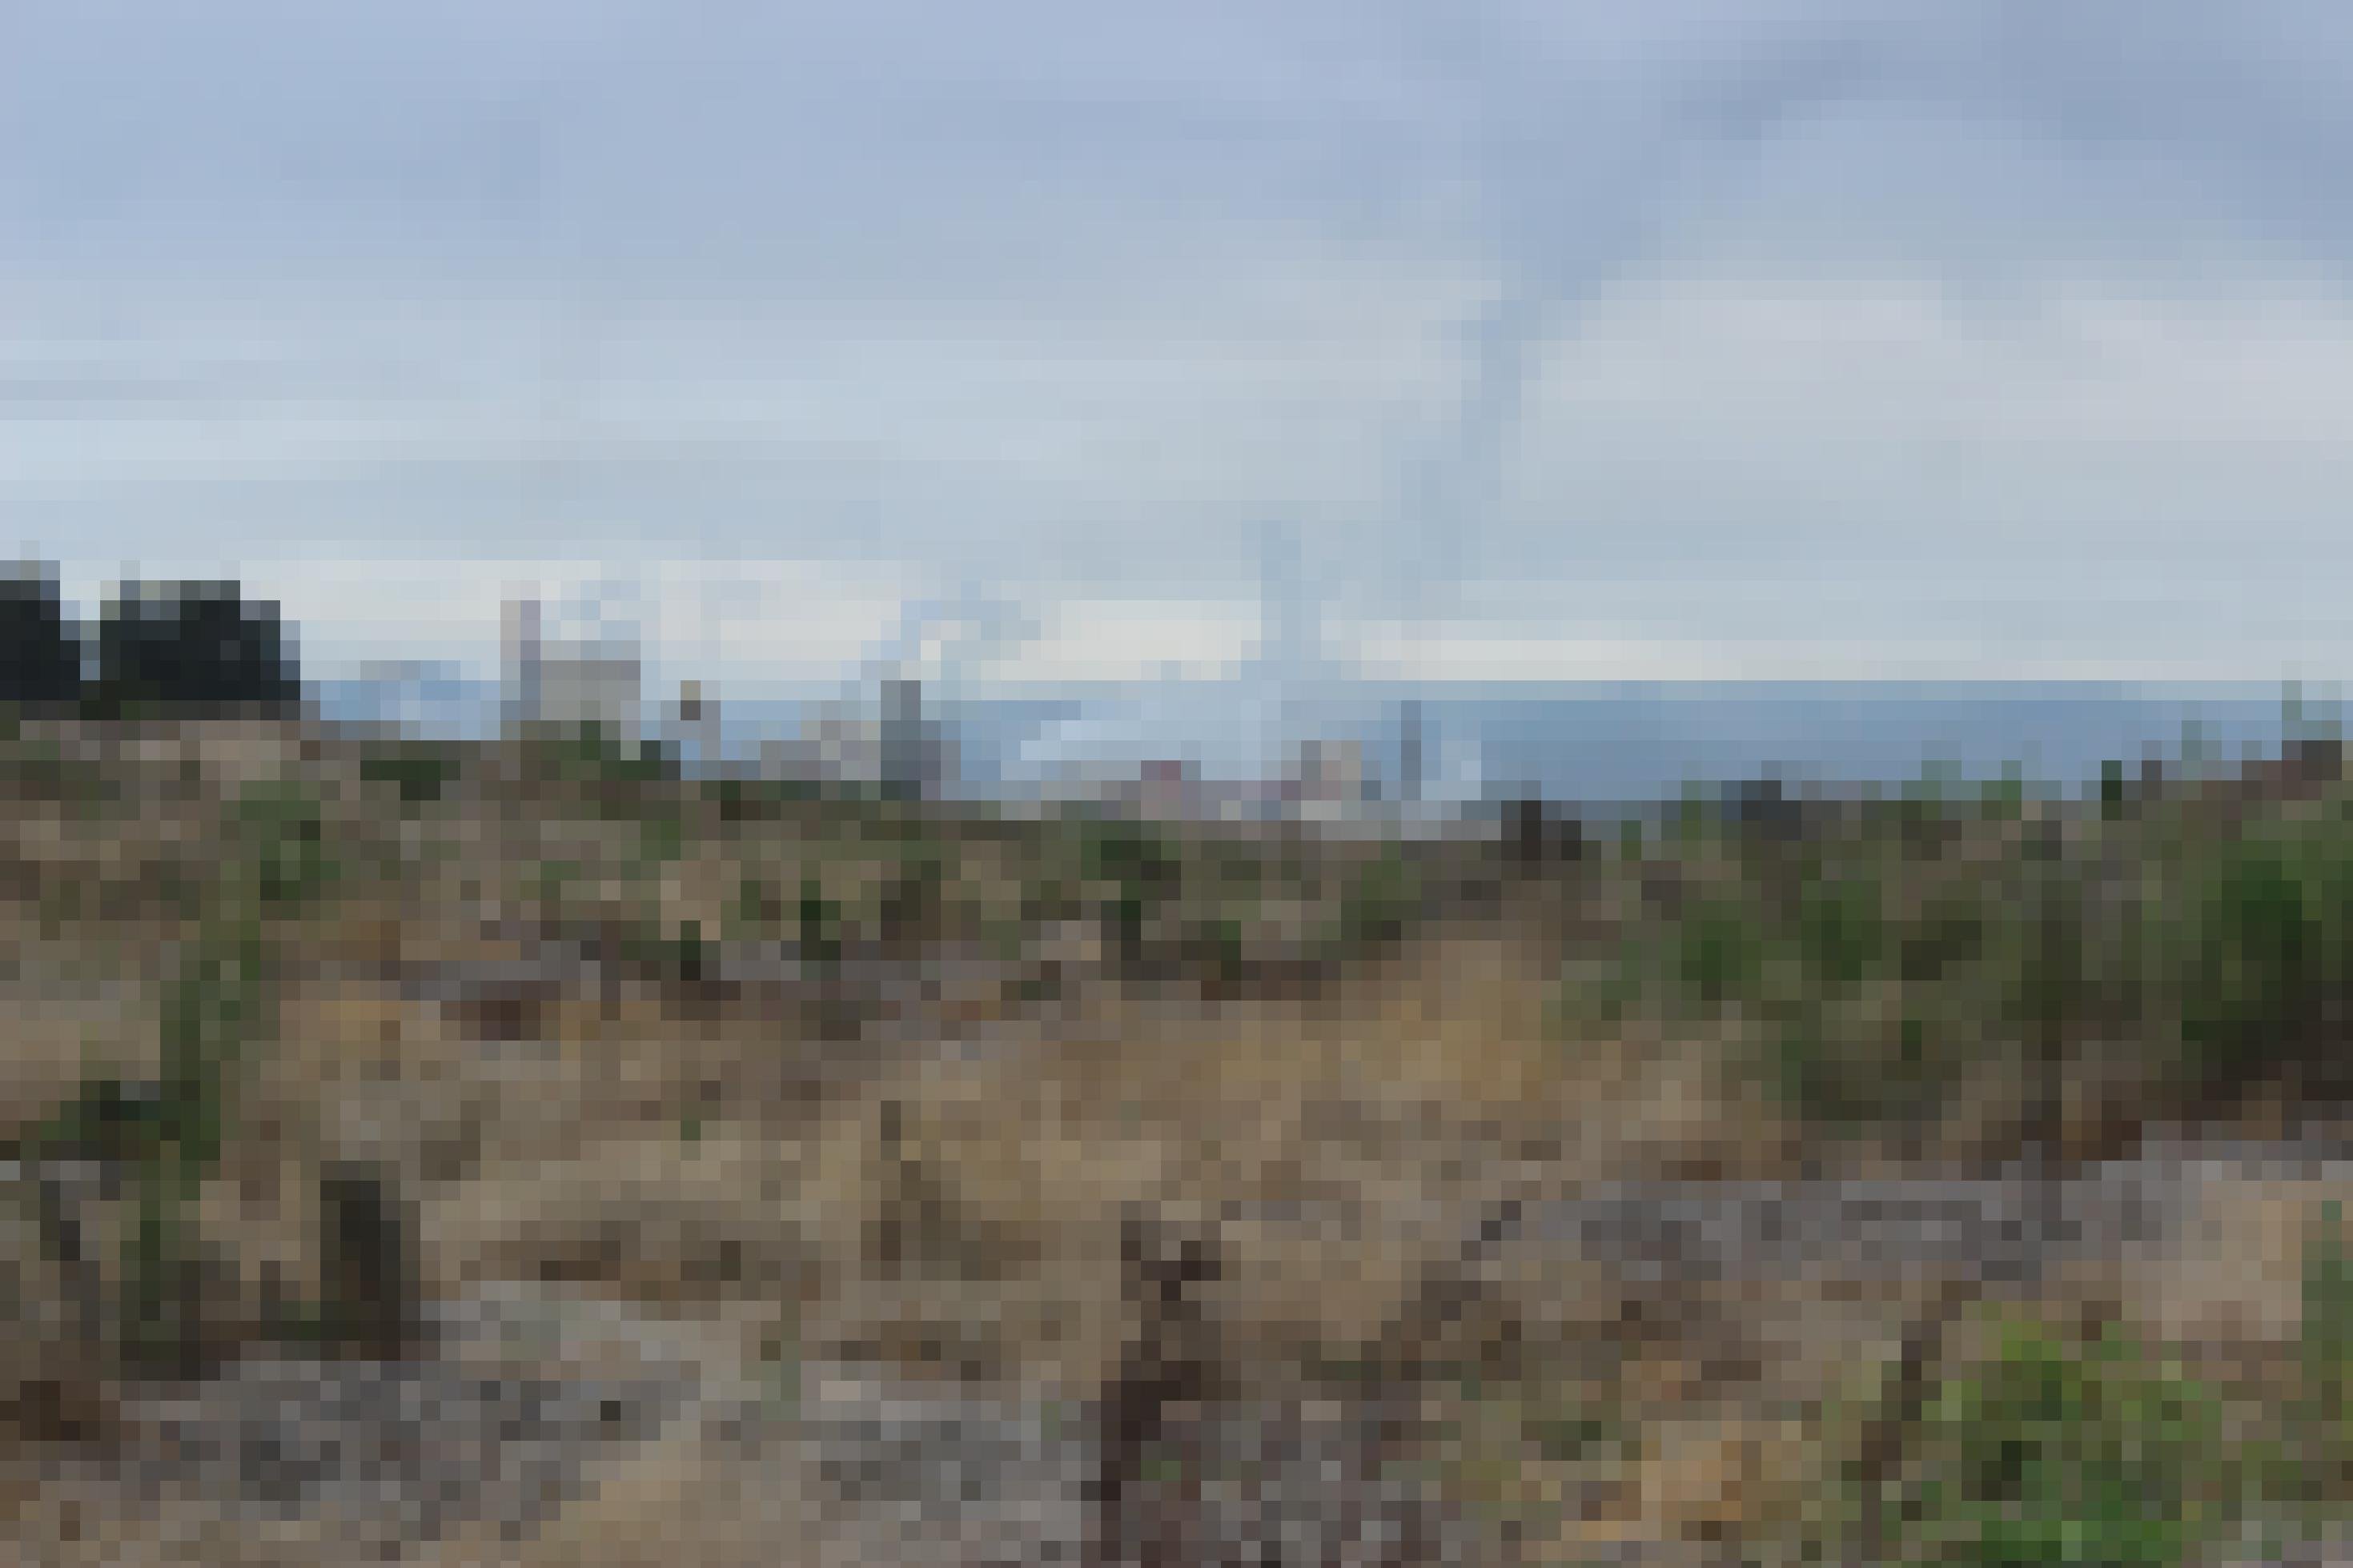 Die Zellulose-Fabrik des Unternehmens Arauco verpestet die Luft und das Wasser in der Umgebung.